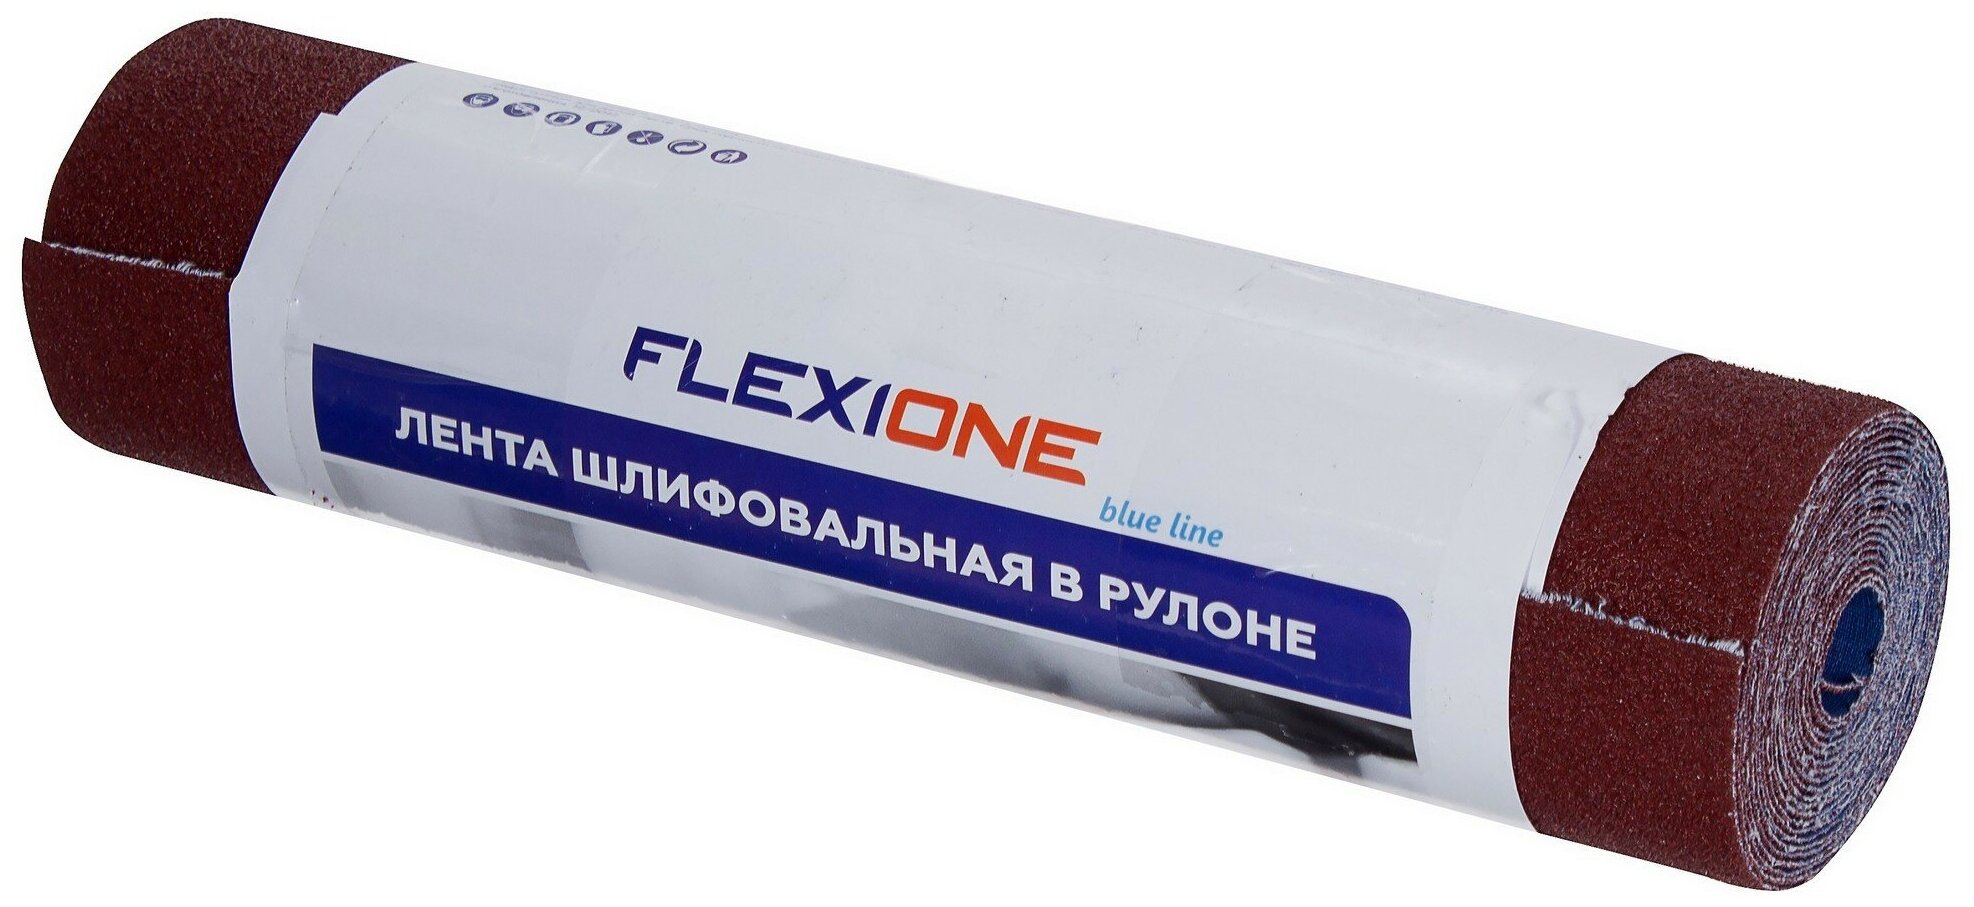 Рулон шлифовальный Flexione P80 280x3000 мм 81930102